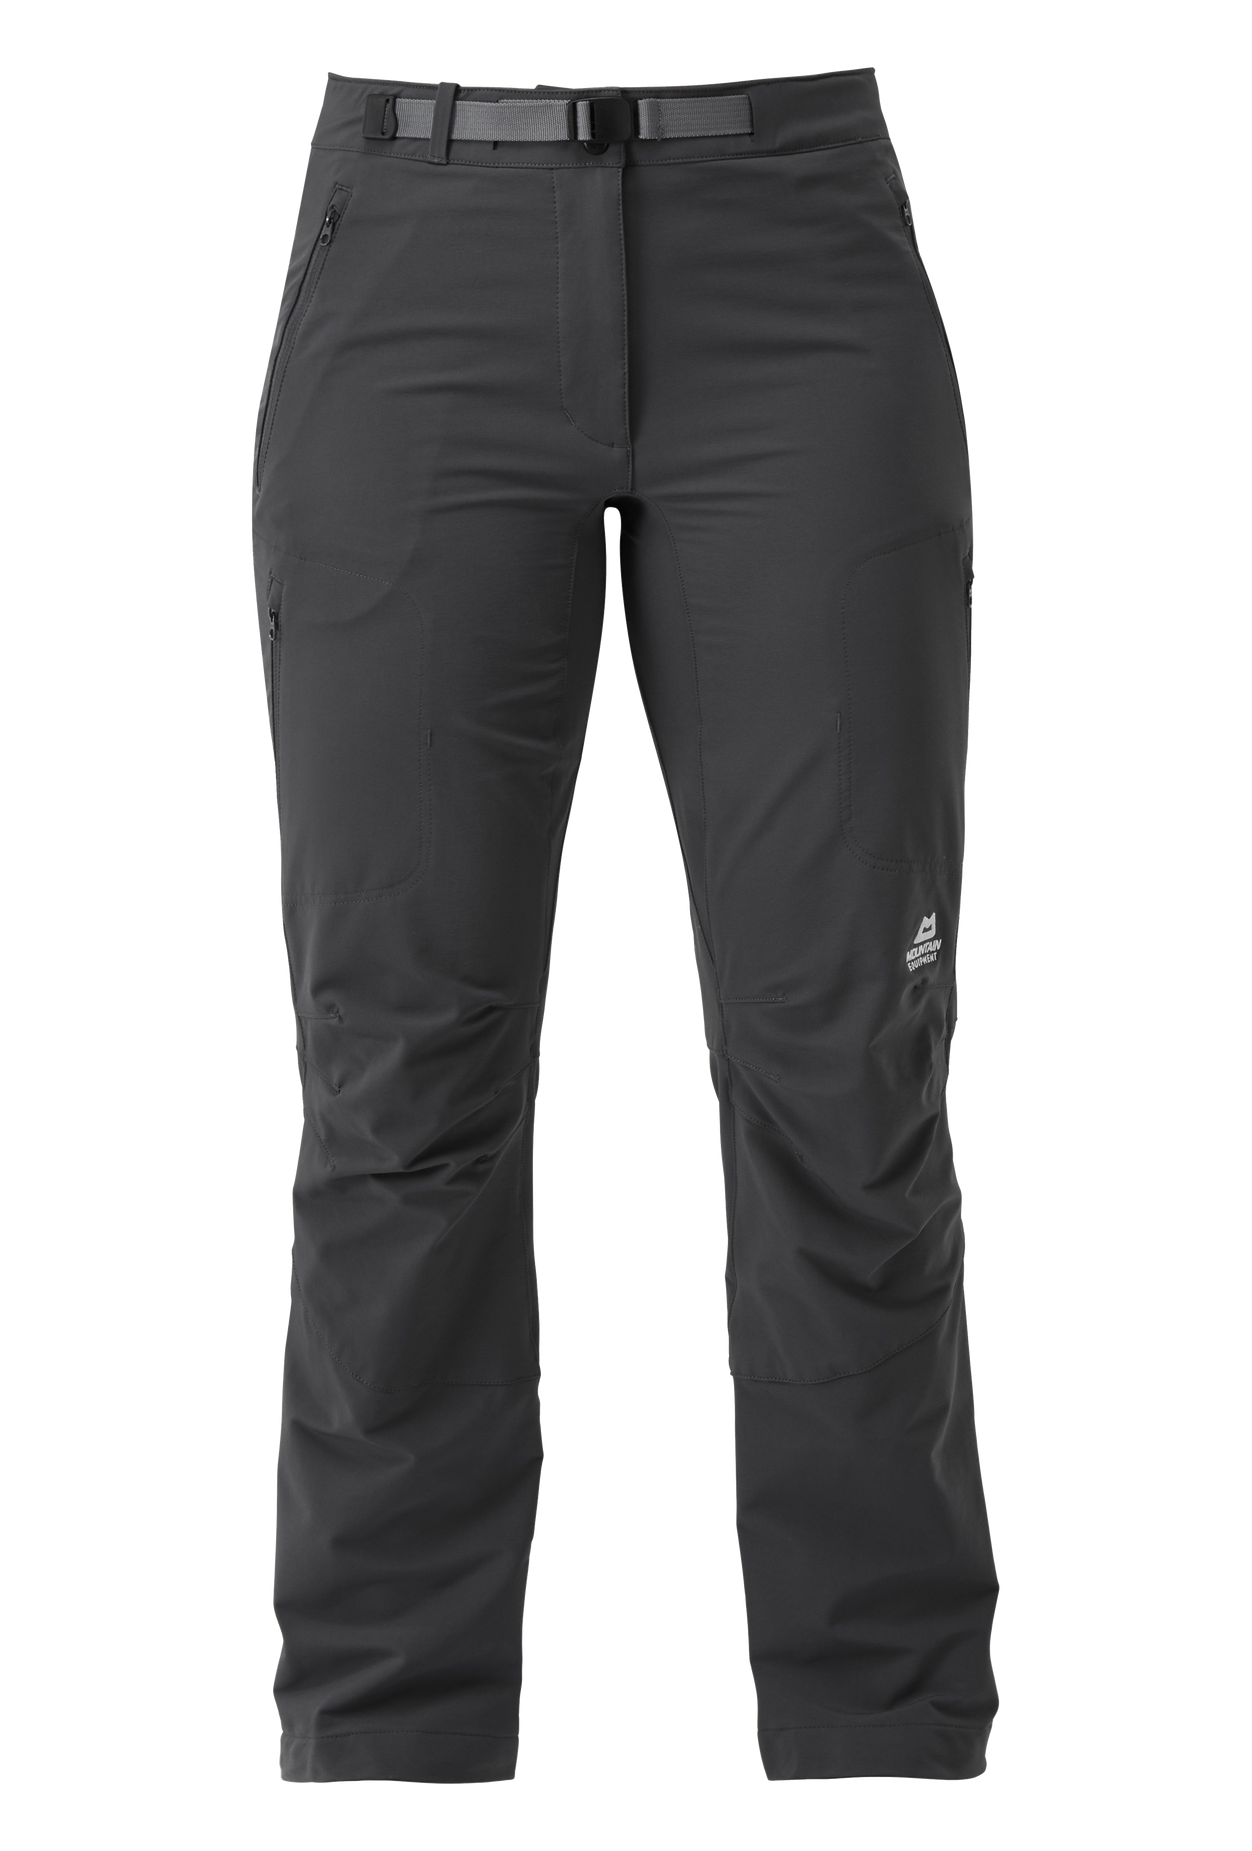 Mountain Equipment dámské softshellové kalhoty Chamois Wmns Pant - zkrácené Barva: Anvil Grey, Velikost: 20/XXXL